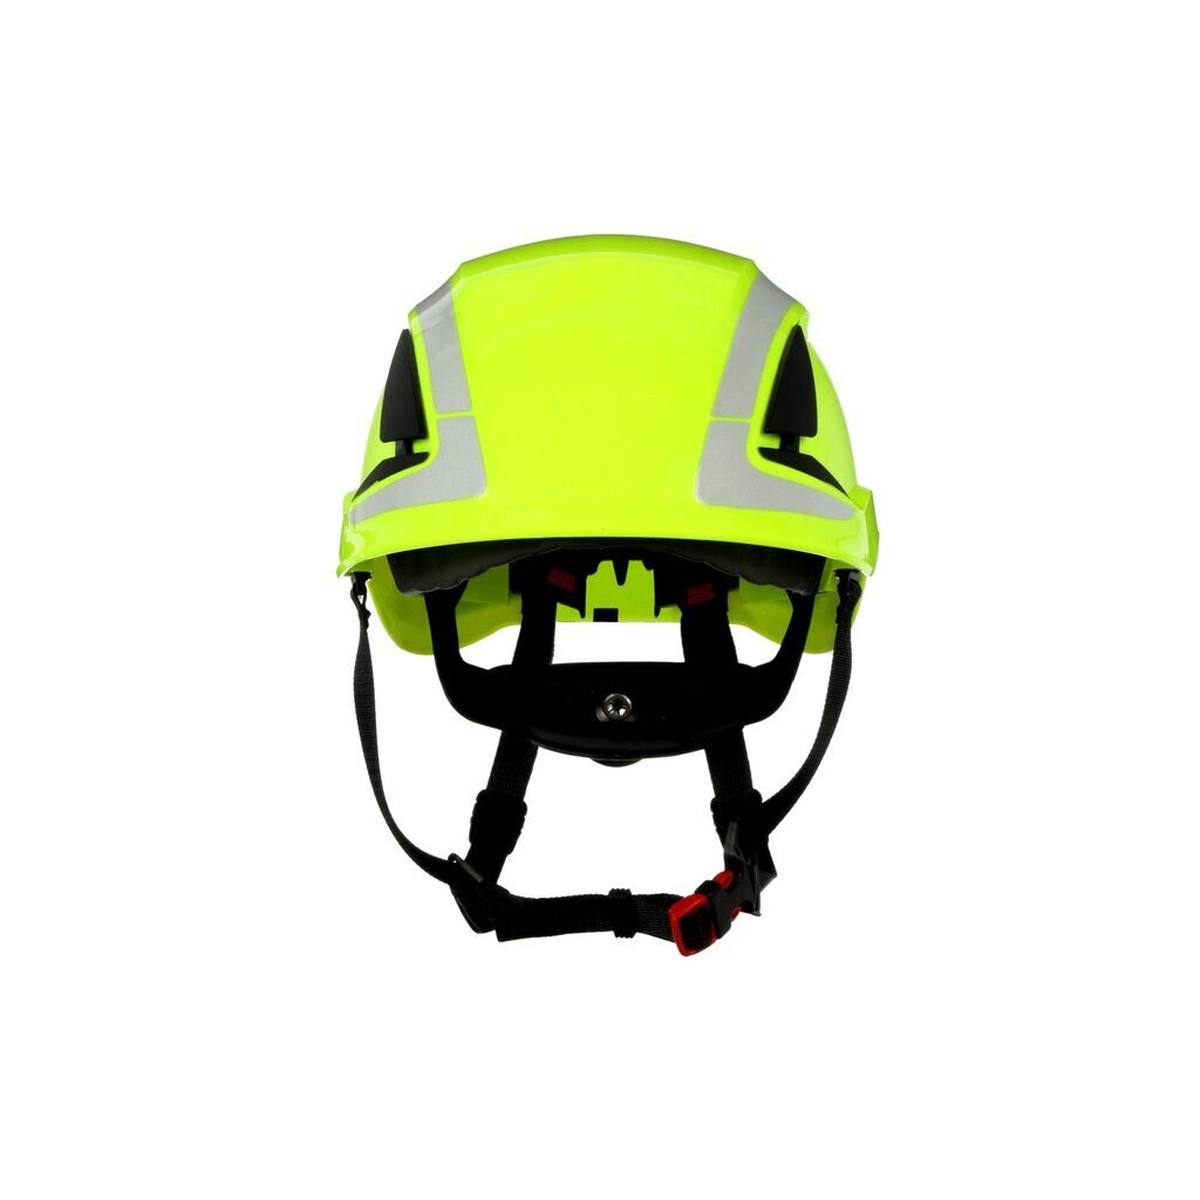 elmetto di sicurezza 3M SecureFit, X5014V-CE, verde neon, ventilato, riflettente, CE